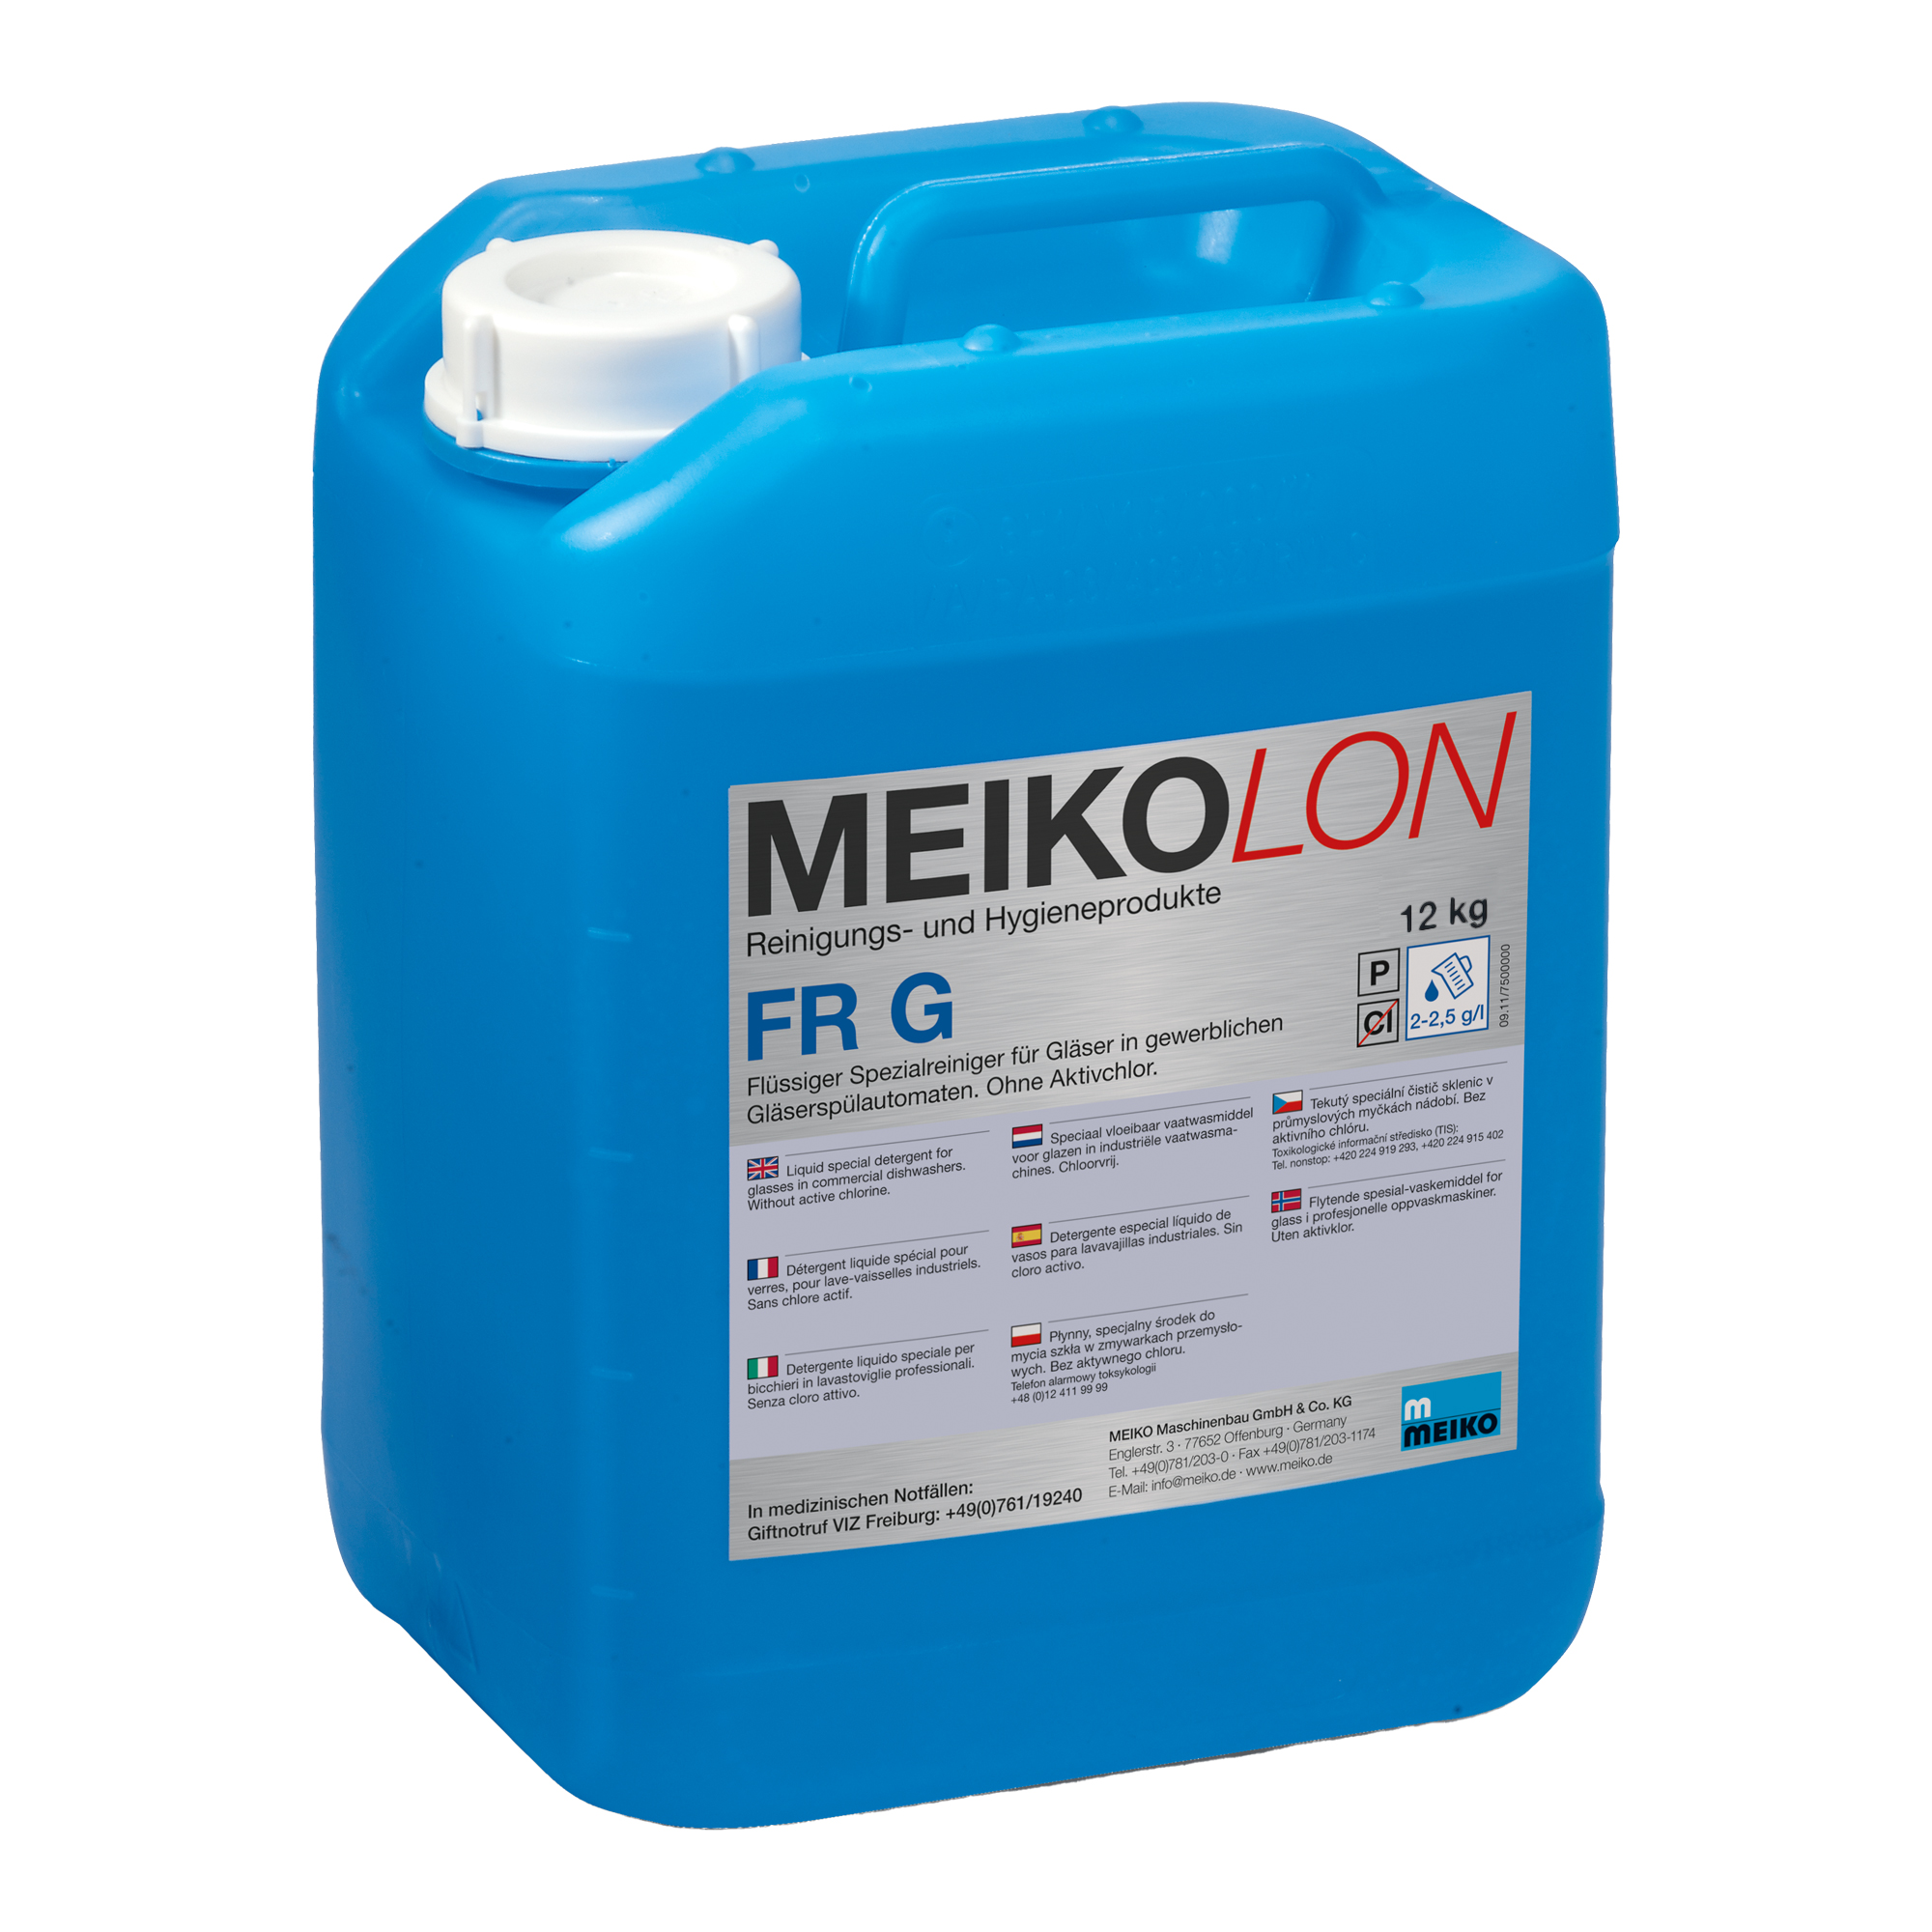 Meiko Meikolon FR G flüssiger Spezialreiniger Gläser 12 kg Kanister 9008967_1